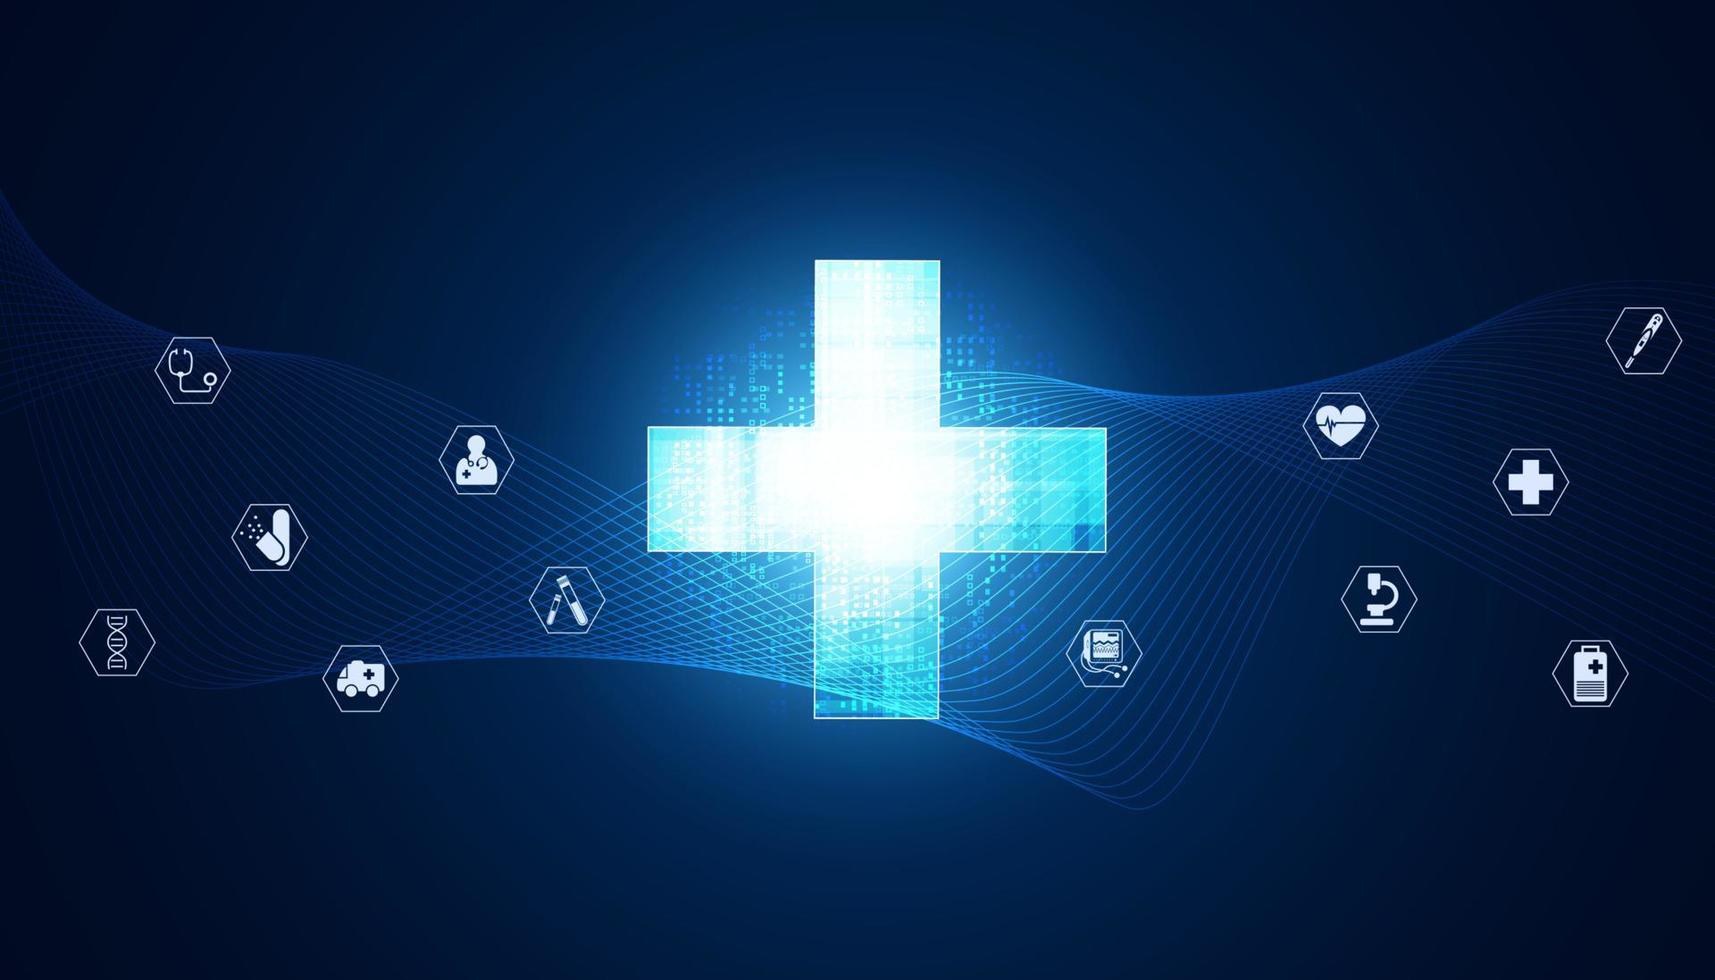 abstracte gezondheid plus symbool met pictogrammen achtergrond concept gezondheid pictogrammen op blauwe achtergrond moderne futuristische medische behandeling ziekte vector